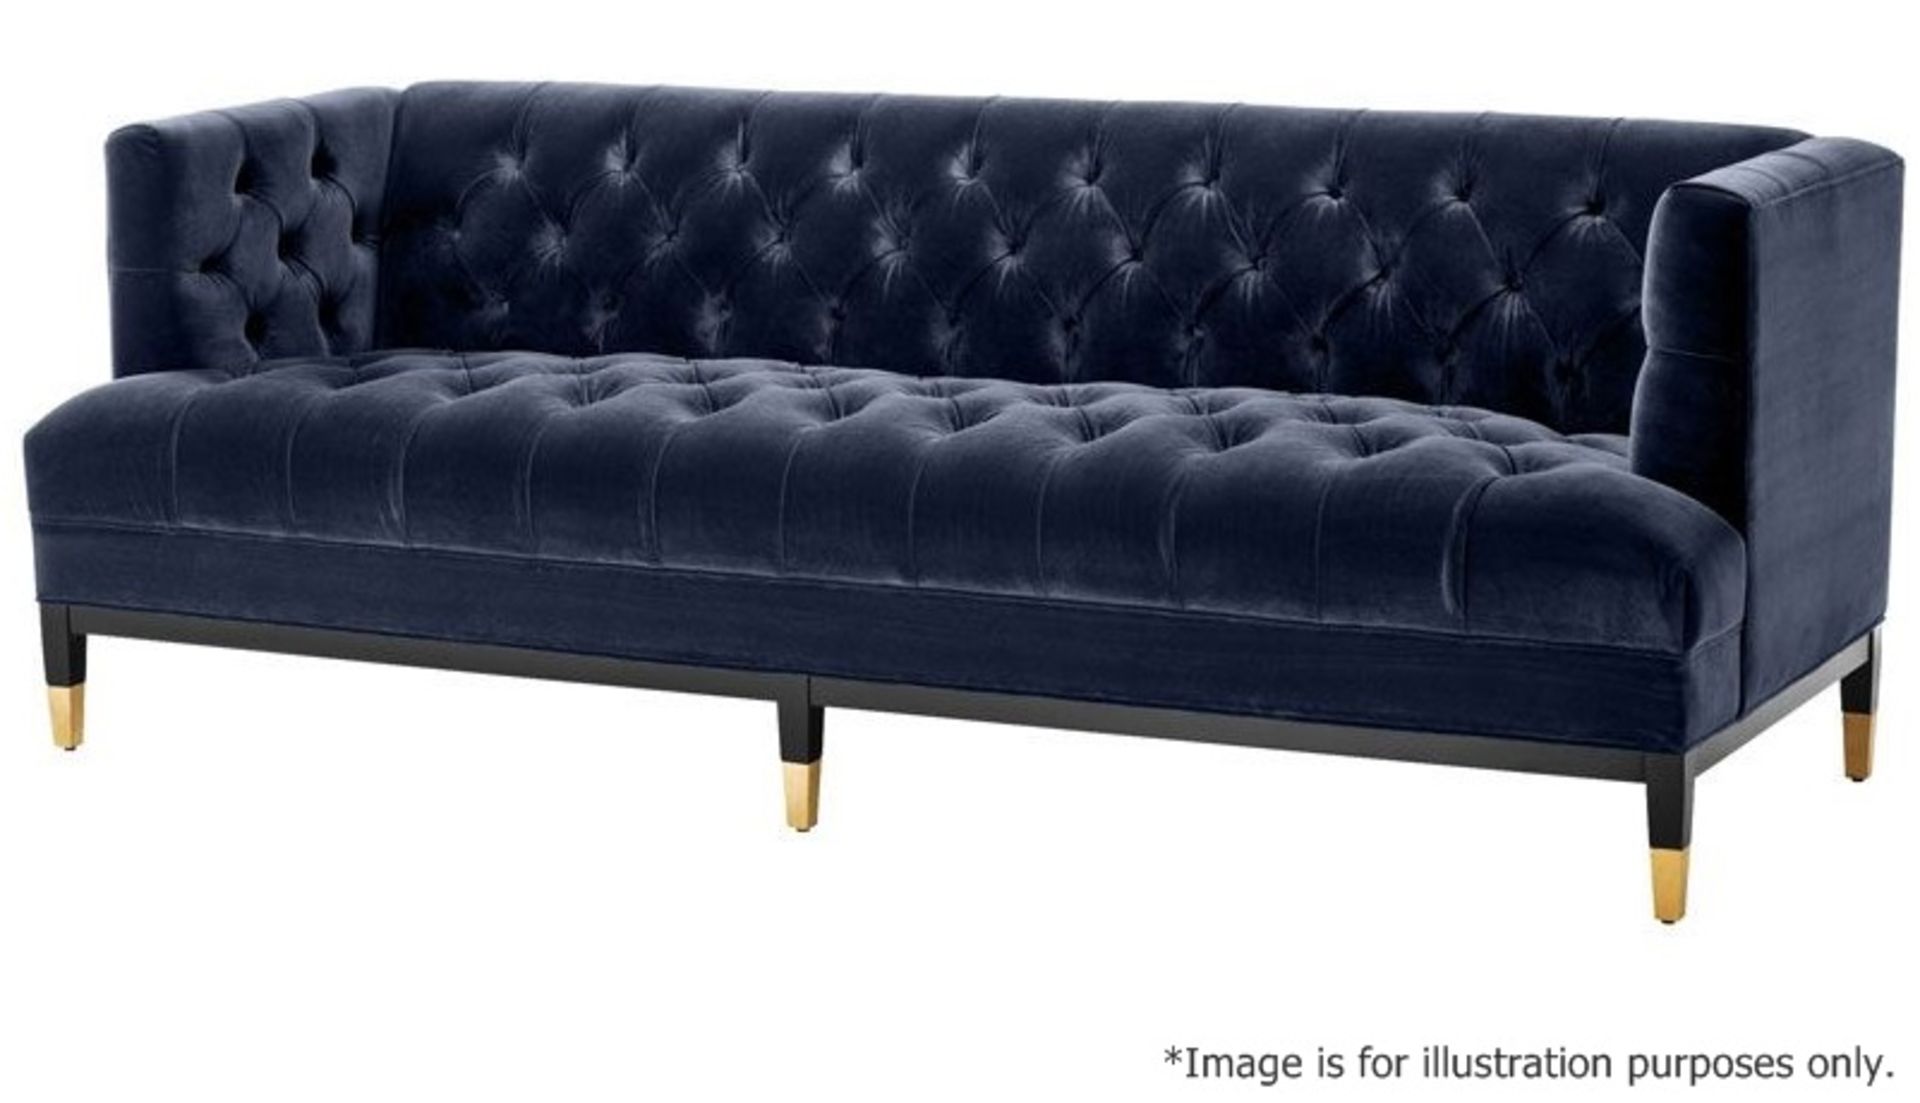 1 x EICHHOLTZ 'Castelle' 2.3 Metre Long Sofa Upholstered In Midnight Blue Velvet - RRP £3,320